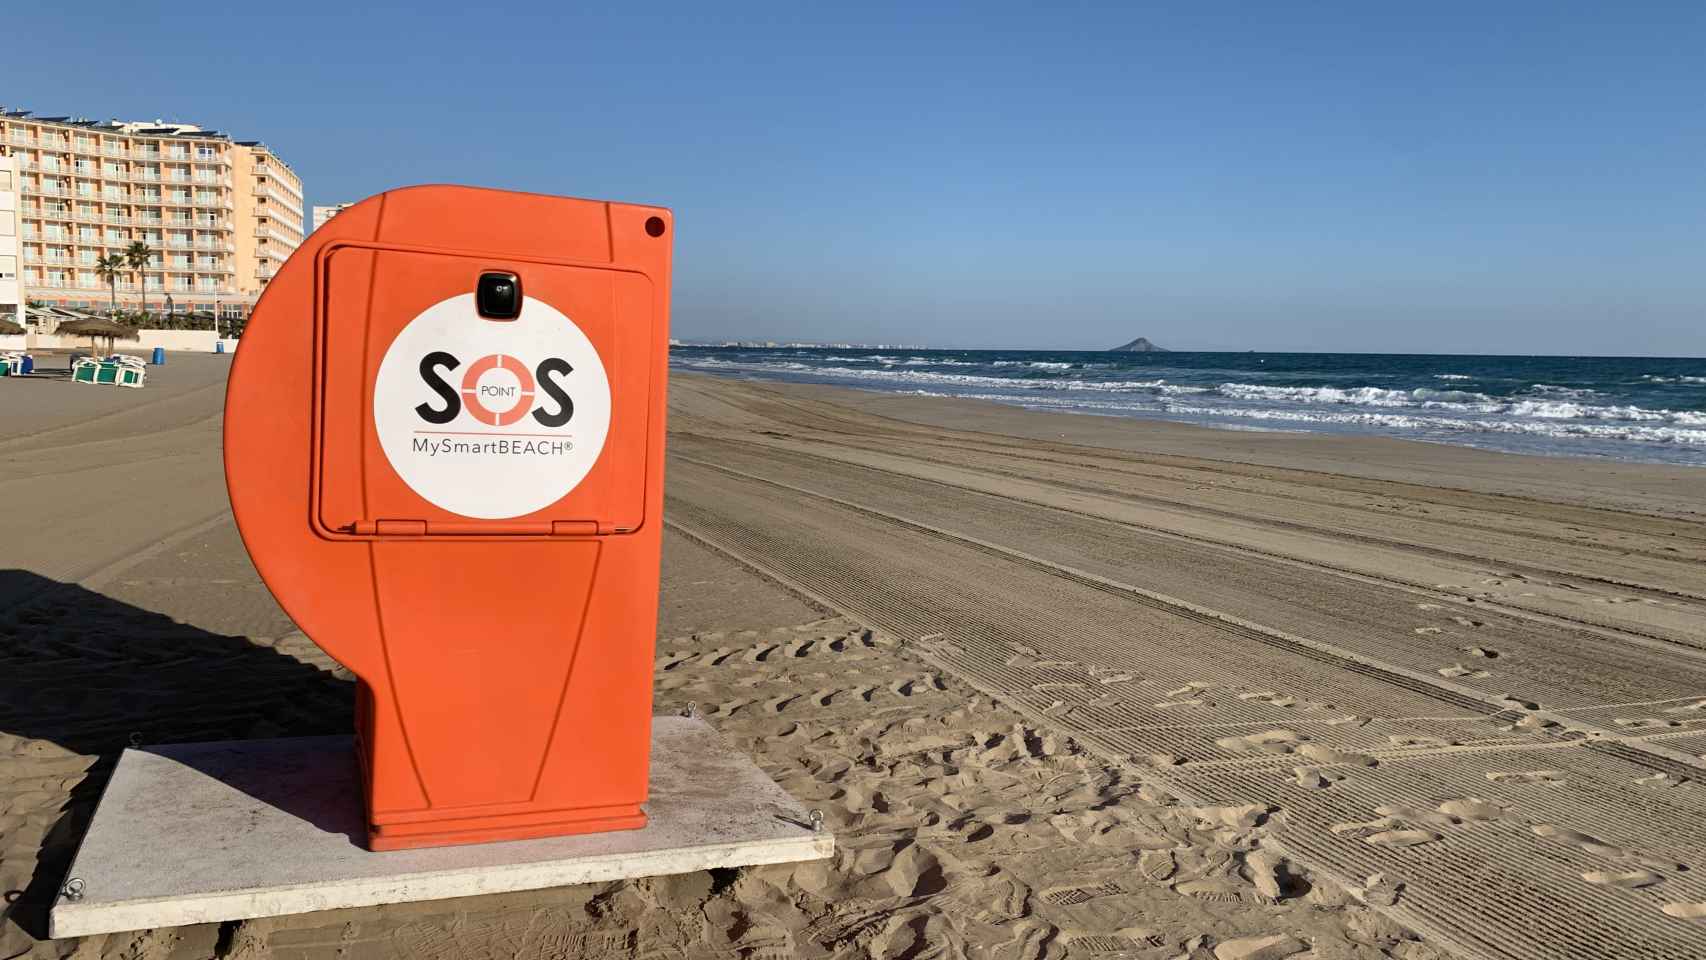 SOS Point ubicado en una playa.